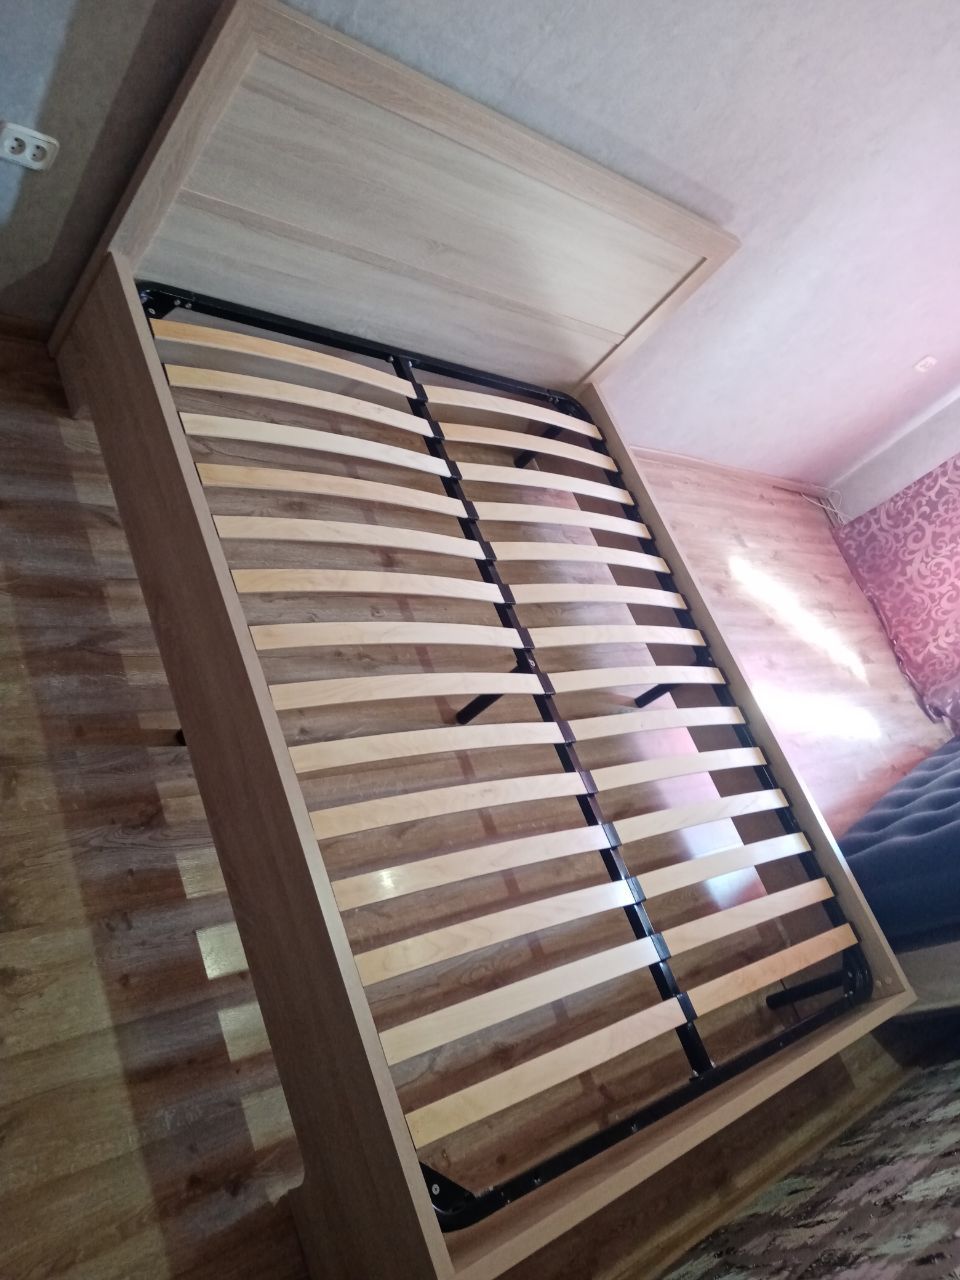 Двуспальная кровать "Мальта" 160 х 200 с подъемным механизмом цвет орех